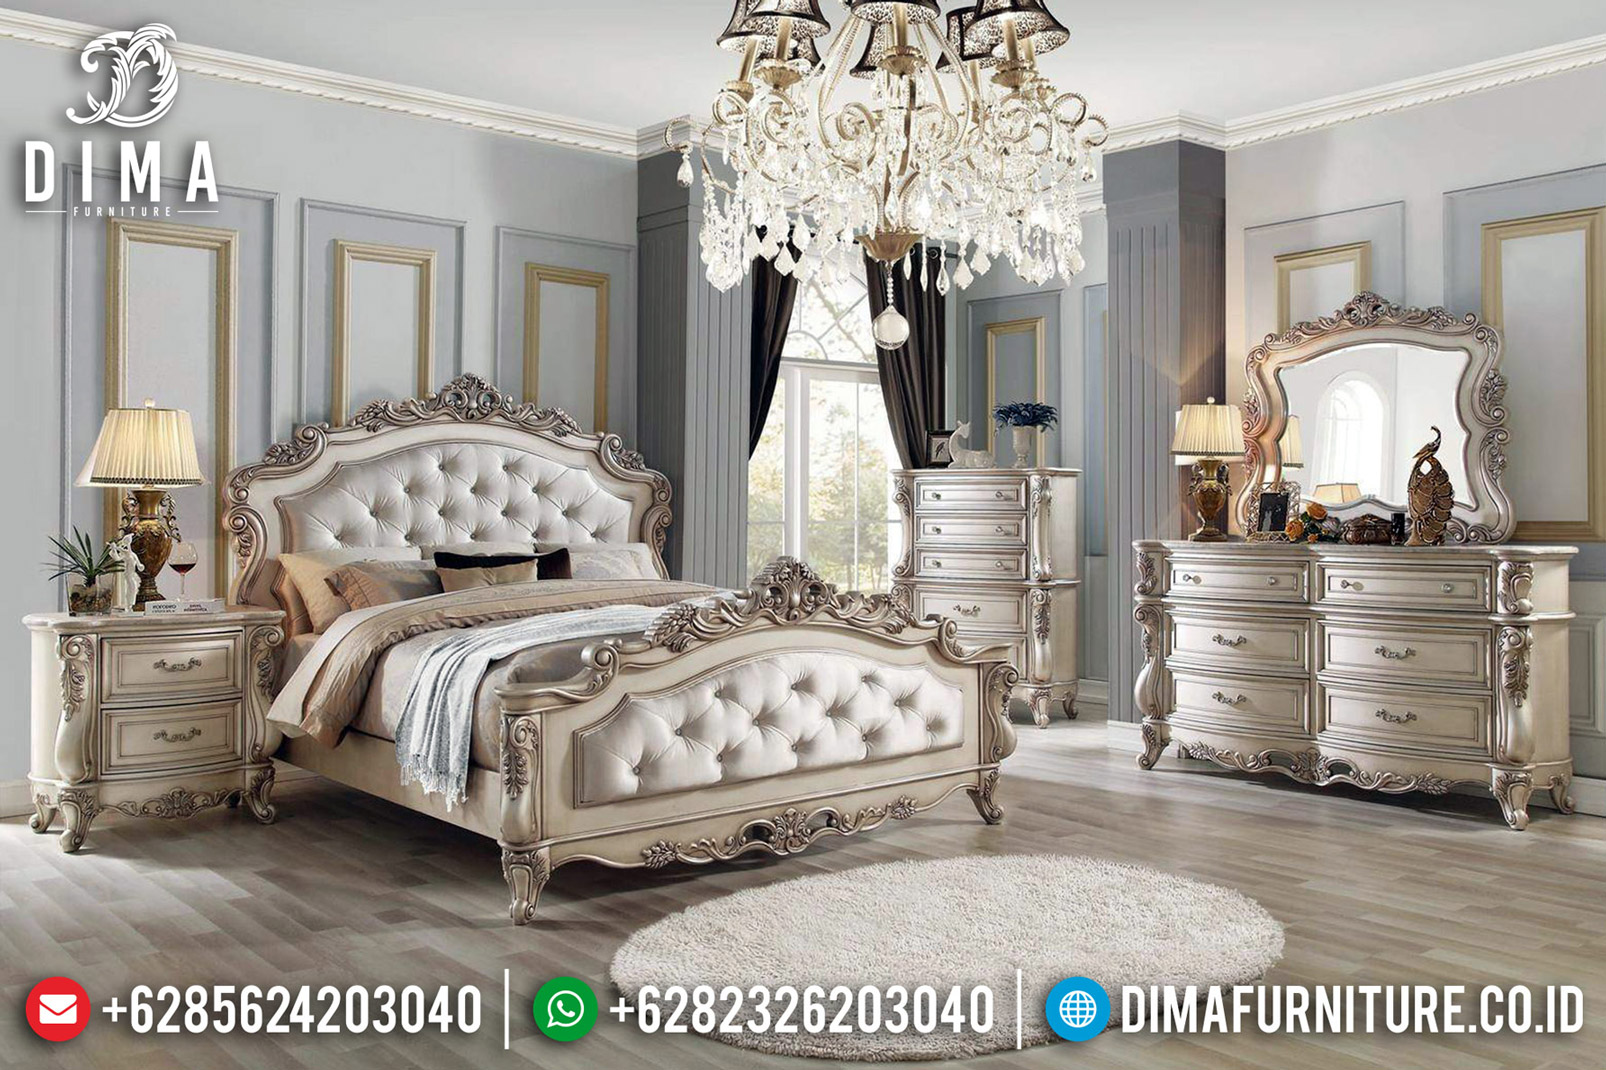 Jual Kamar Set Mewah Ukiran Classic White Ivory Furniture Jepara BT-0559